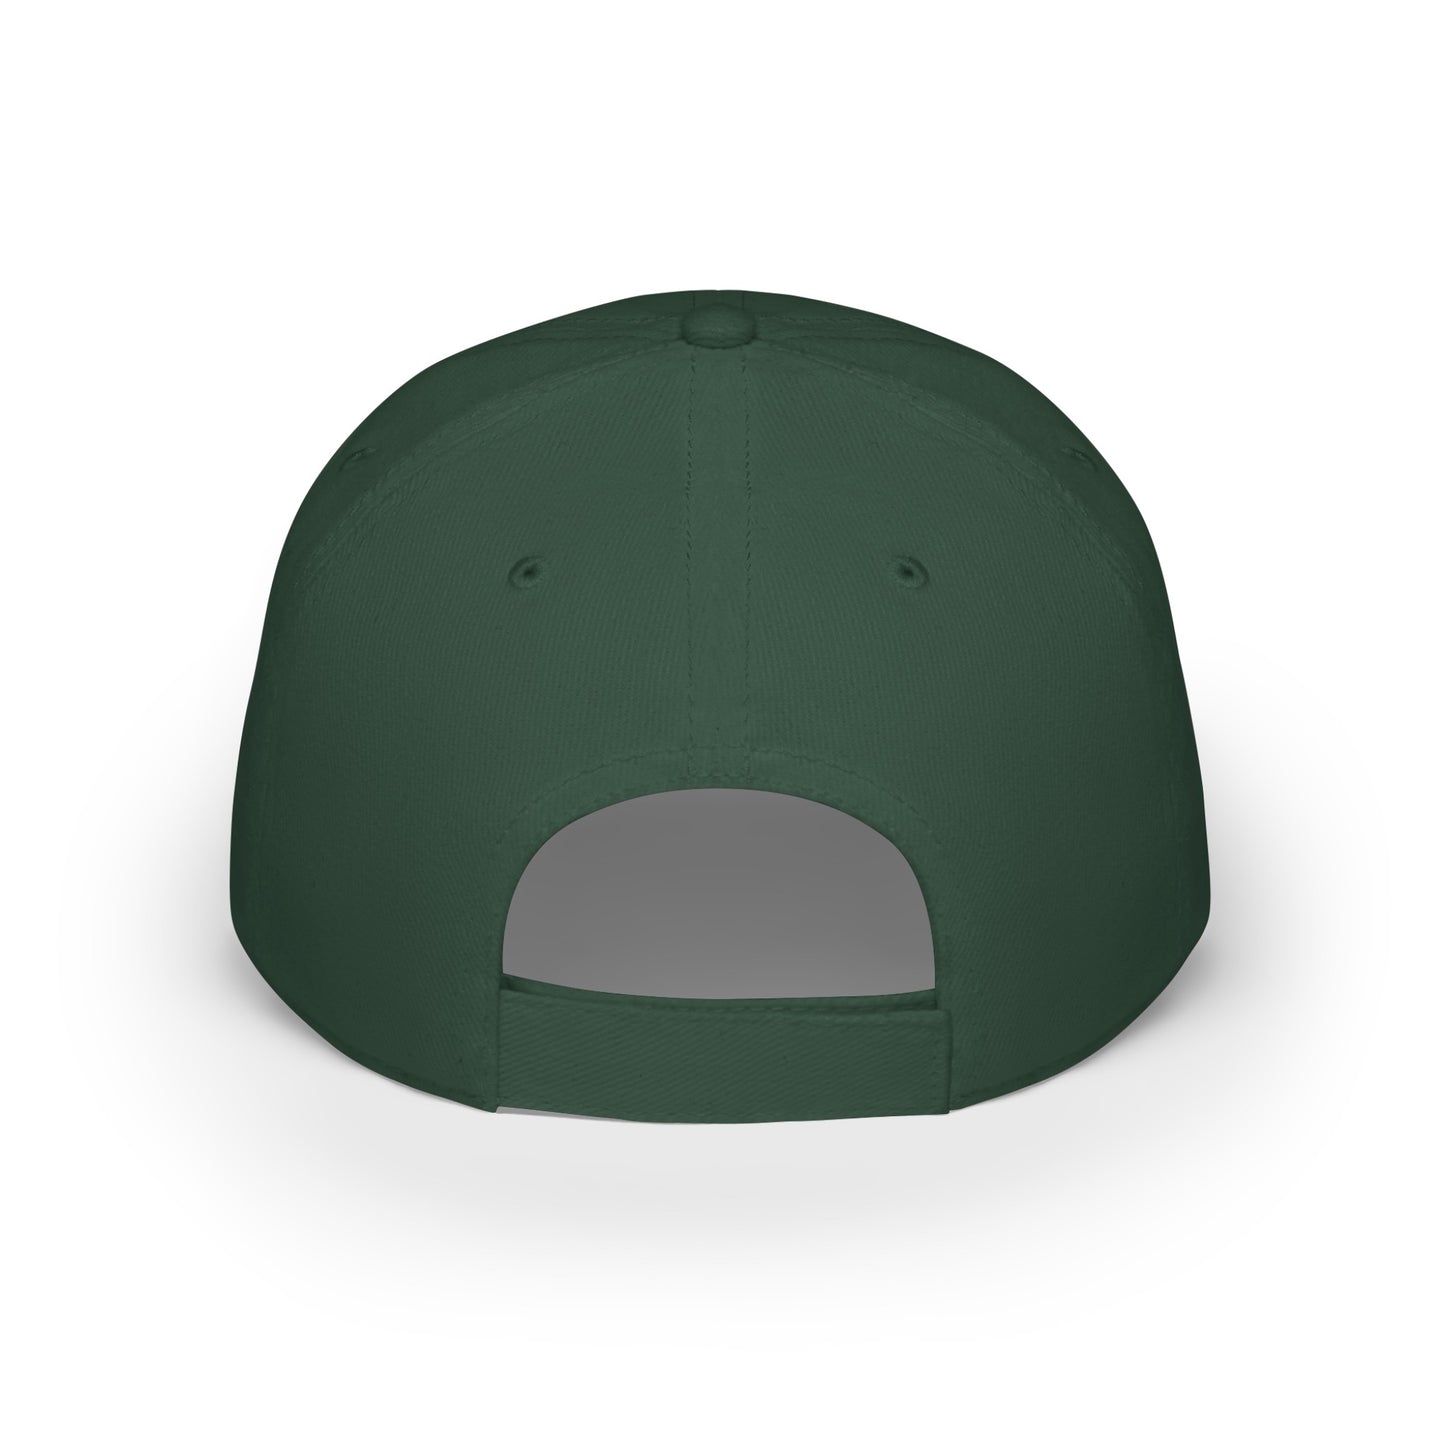 MDBTDJ#SWRC - Low Profile Baseball Cap Tattooed Dj's Limited Edition, Hats, Tattooed Djs Shop